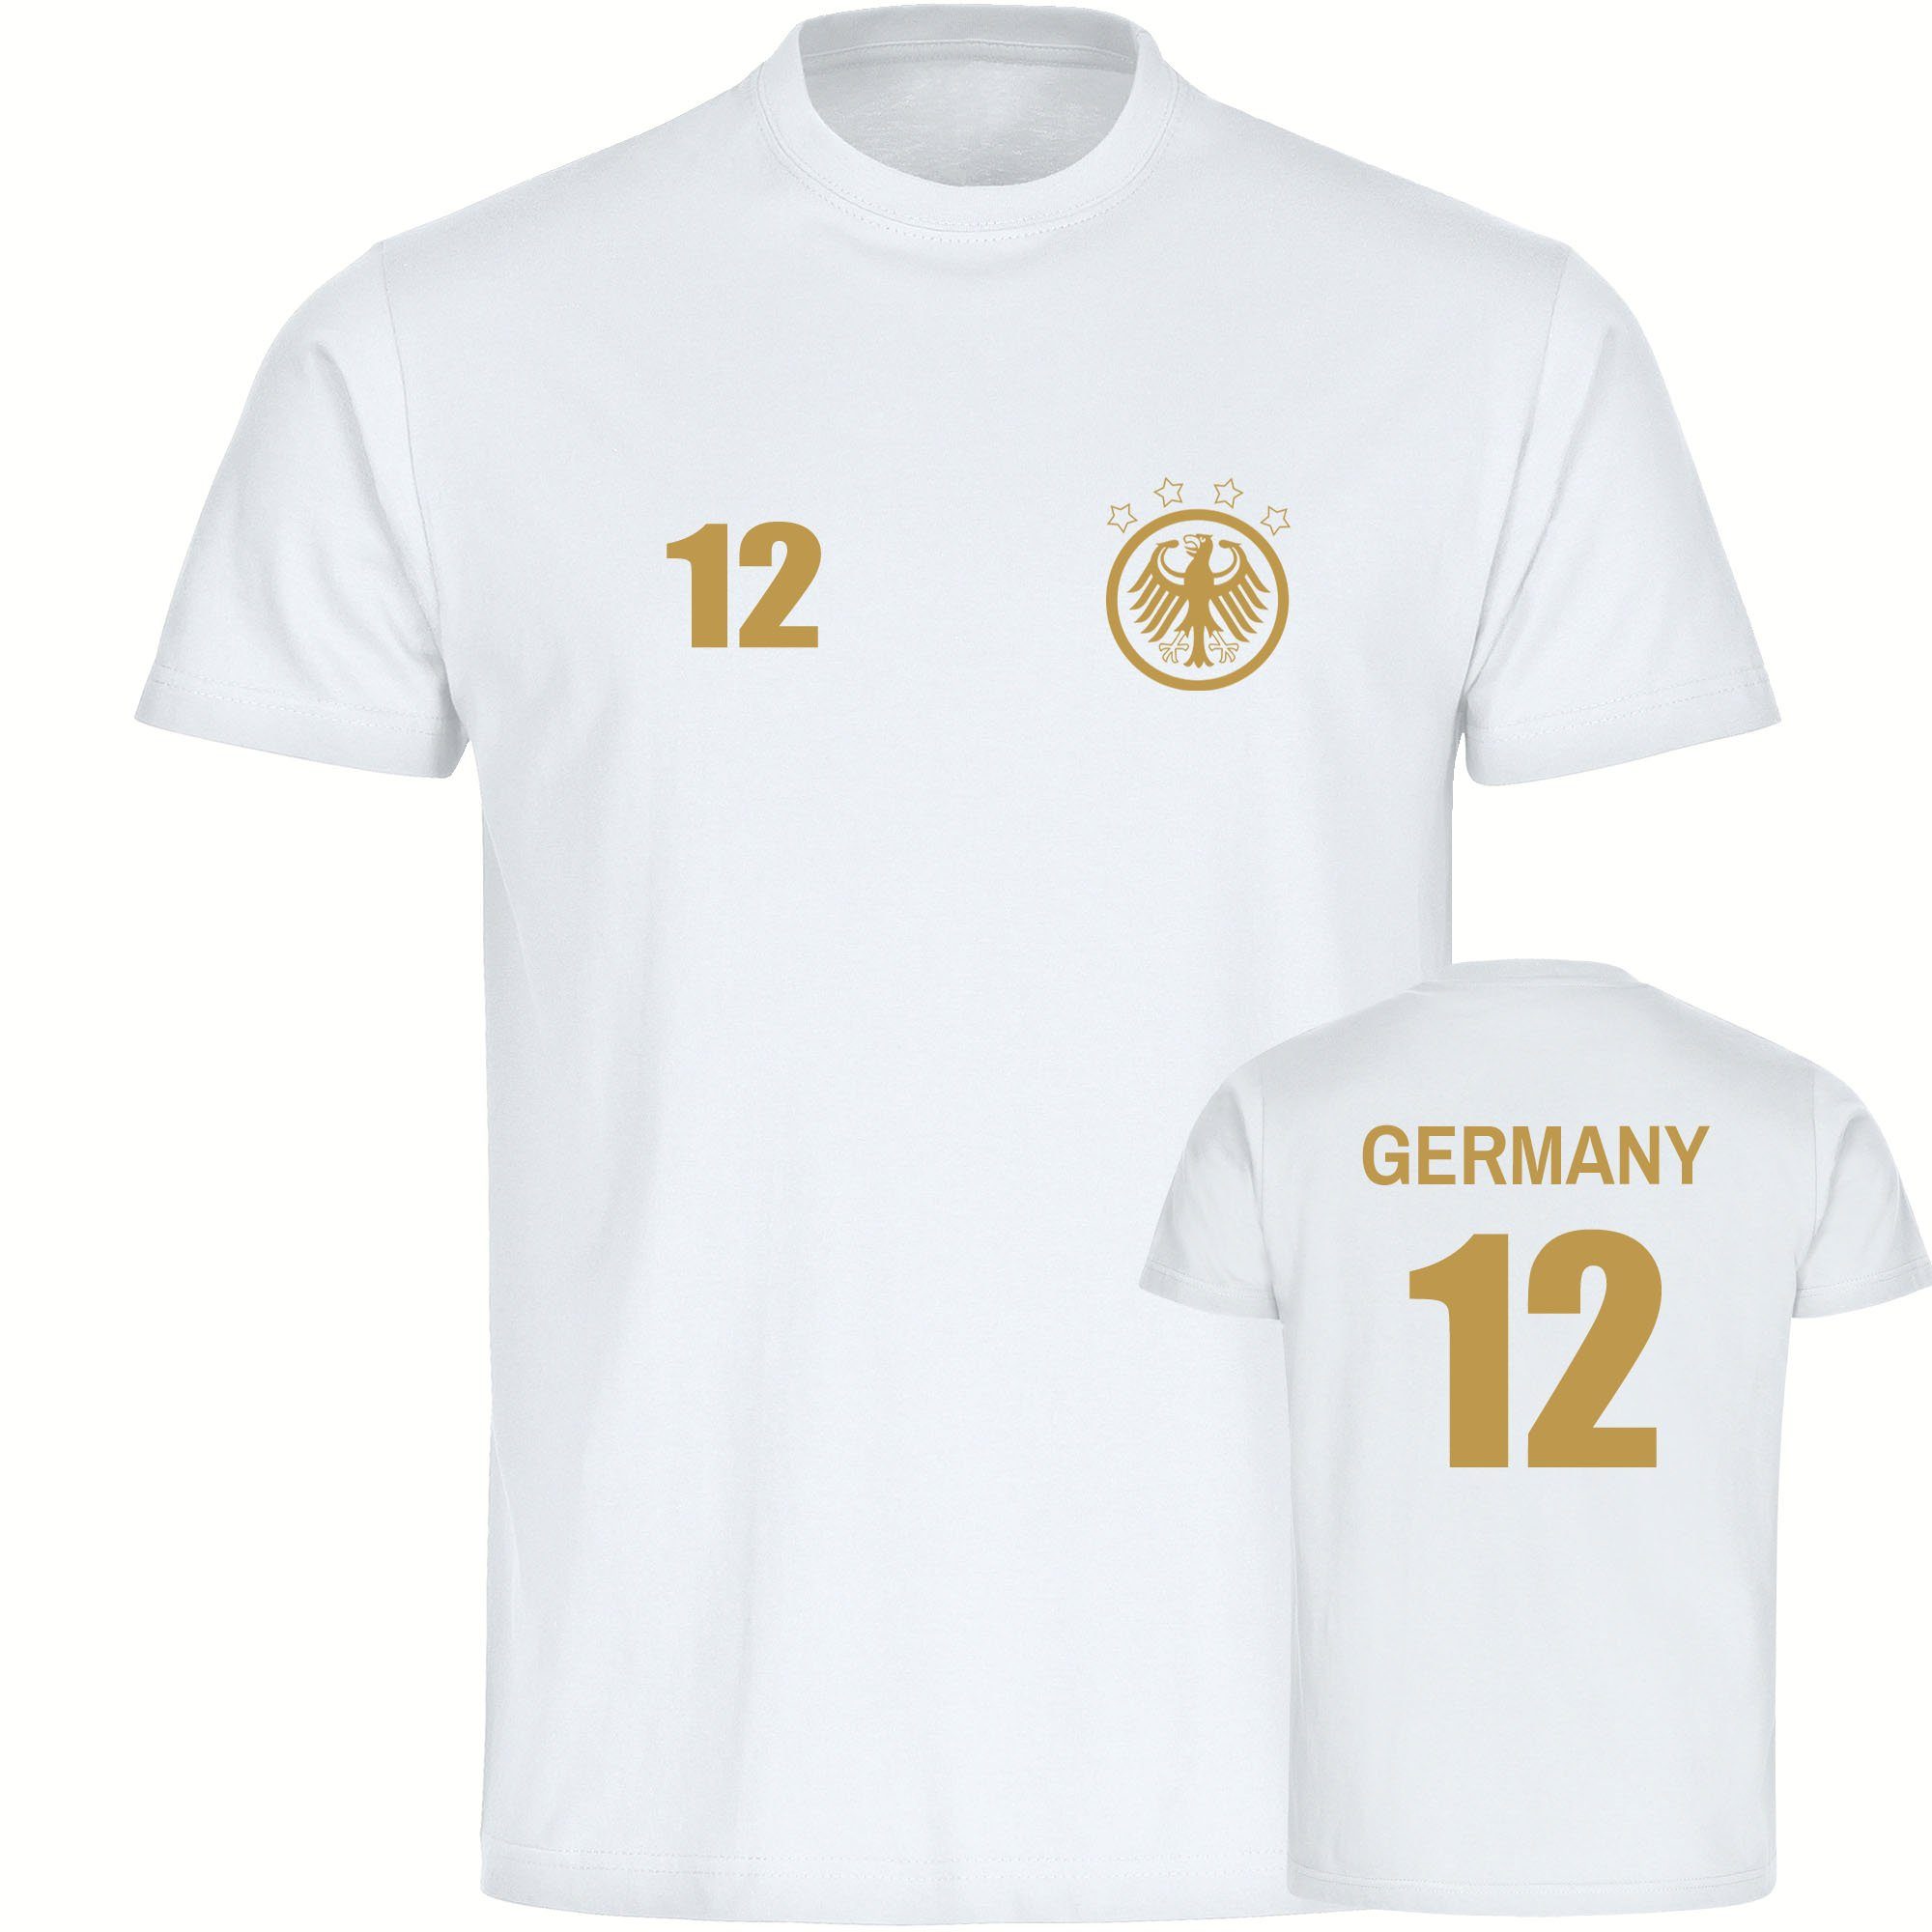 multifanshop T-Shirt Kinder Germany - Adler Retro Trikot 12 Gold - Boy Girl